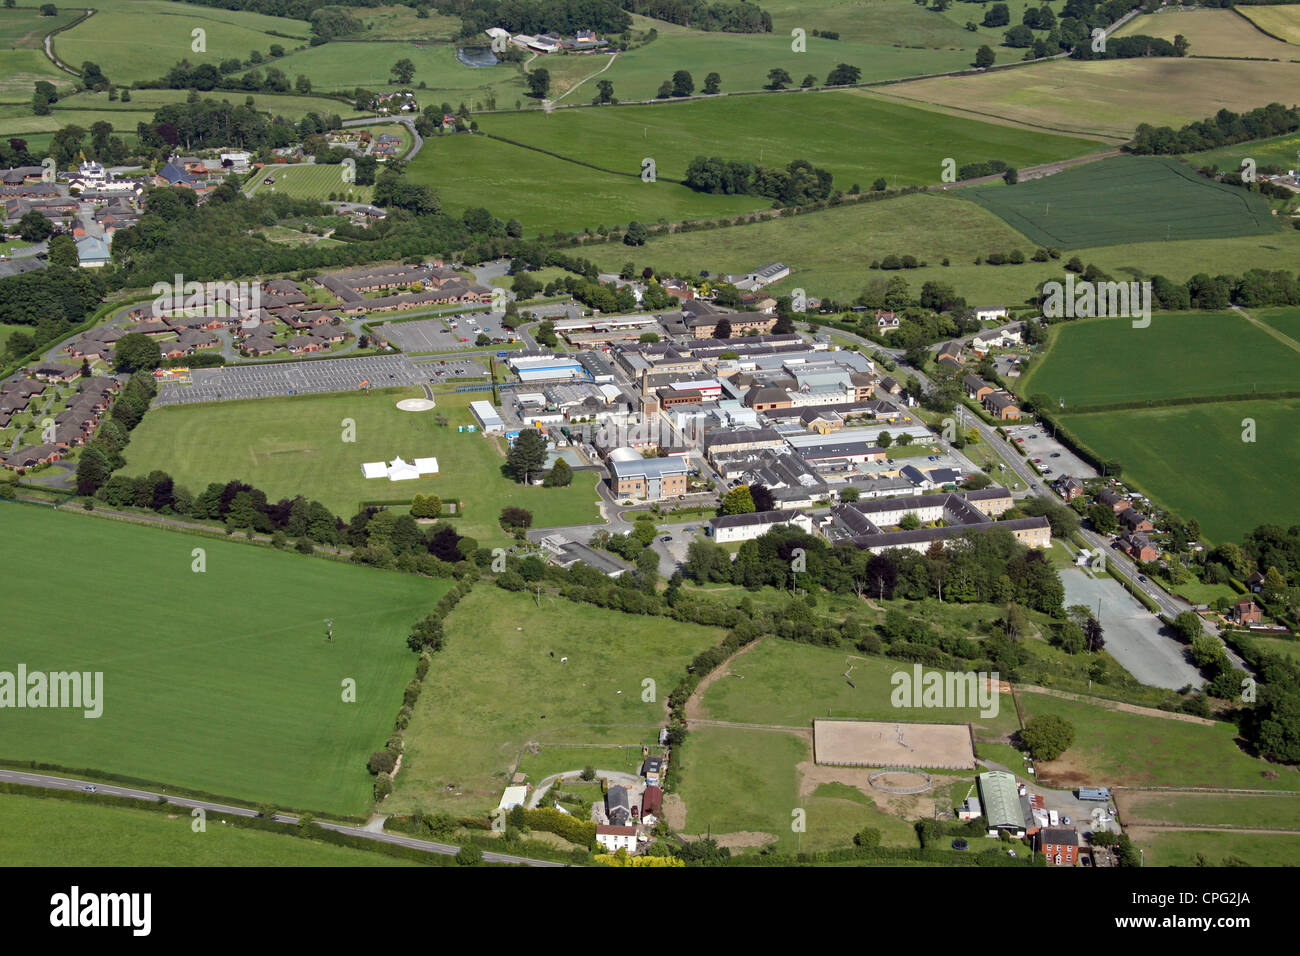 Vue aérienne de l'hôpital orthopédique Robert Jones & Agnes Hunt, Oswestry, Shropshire Banque D'Images